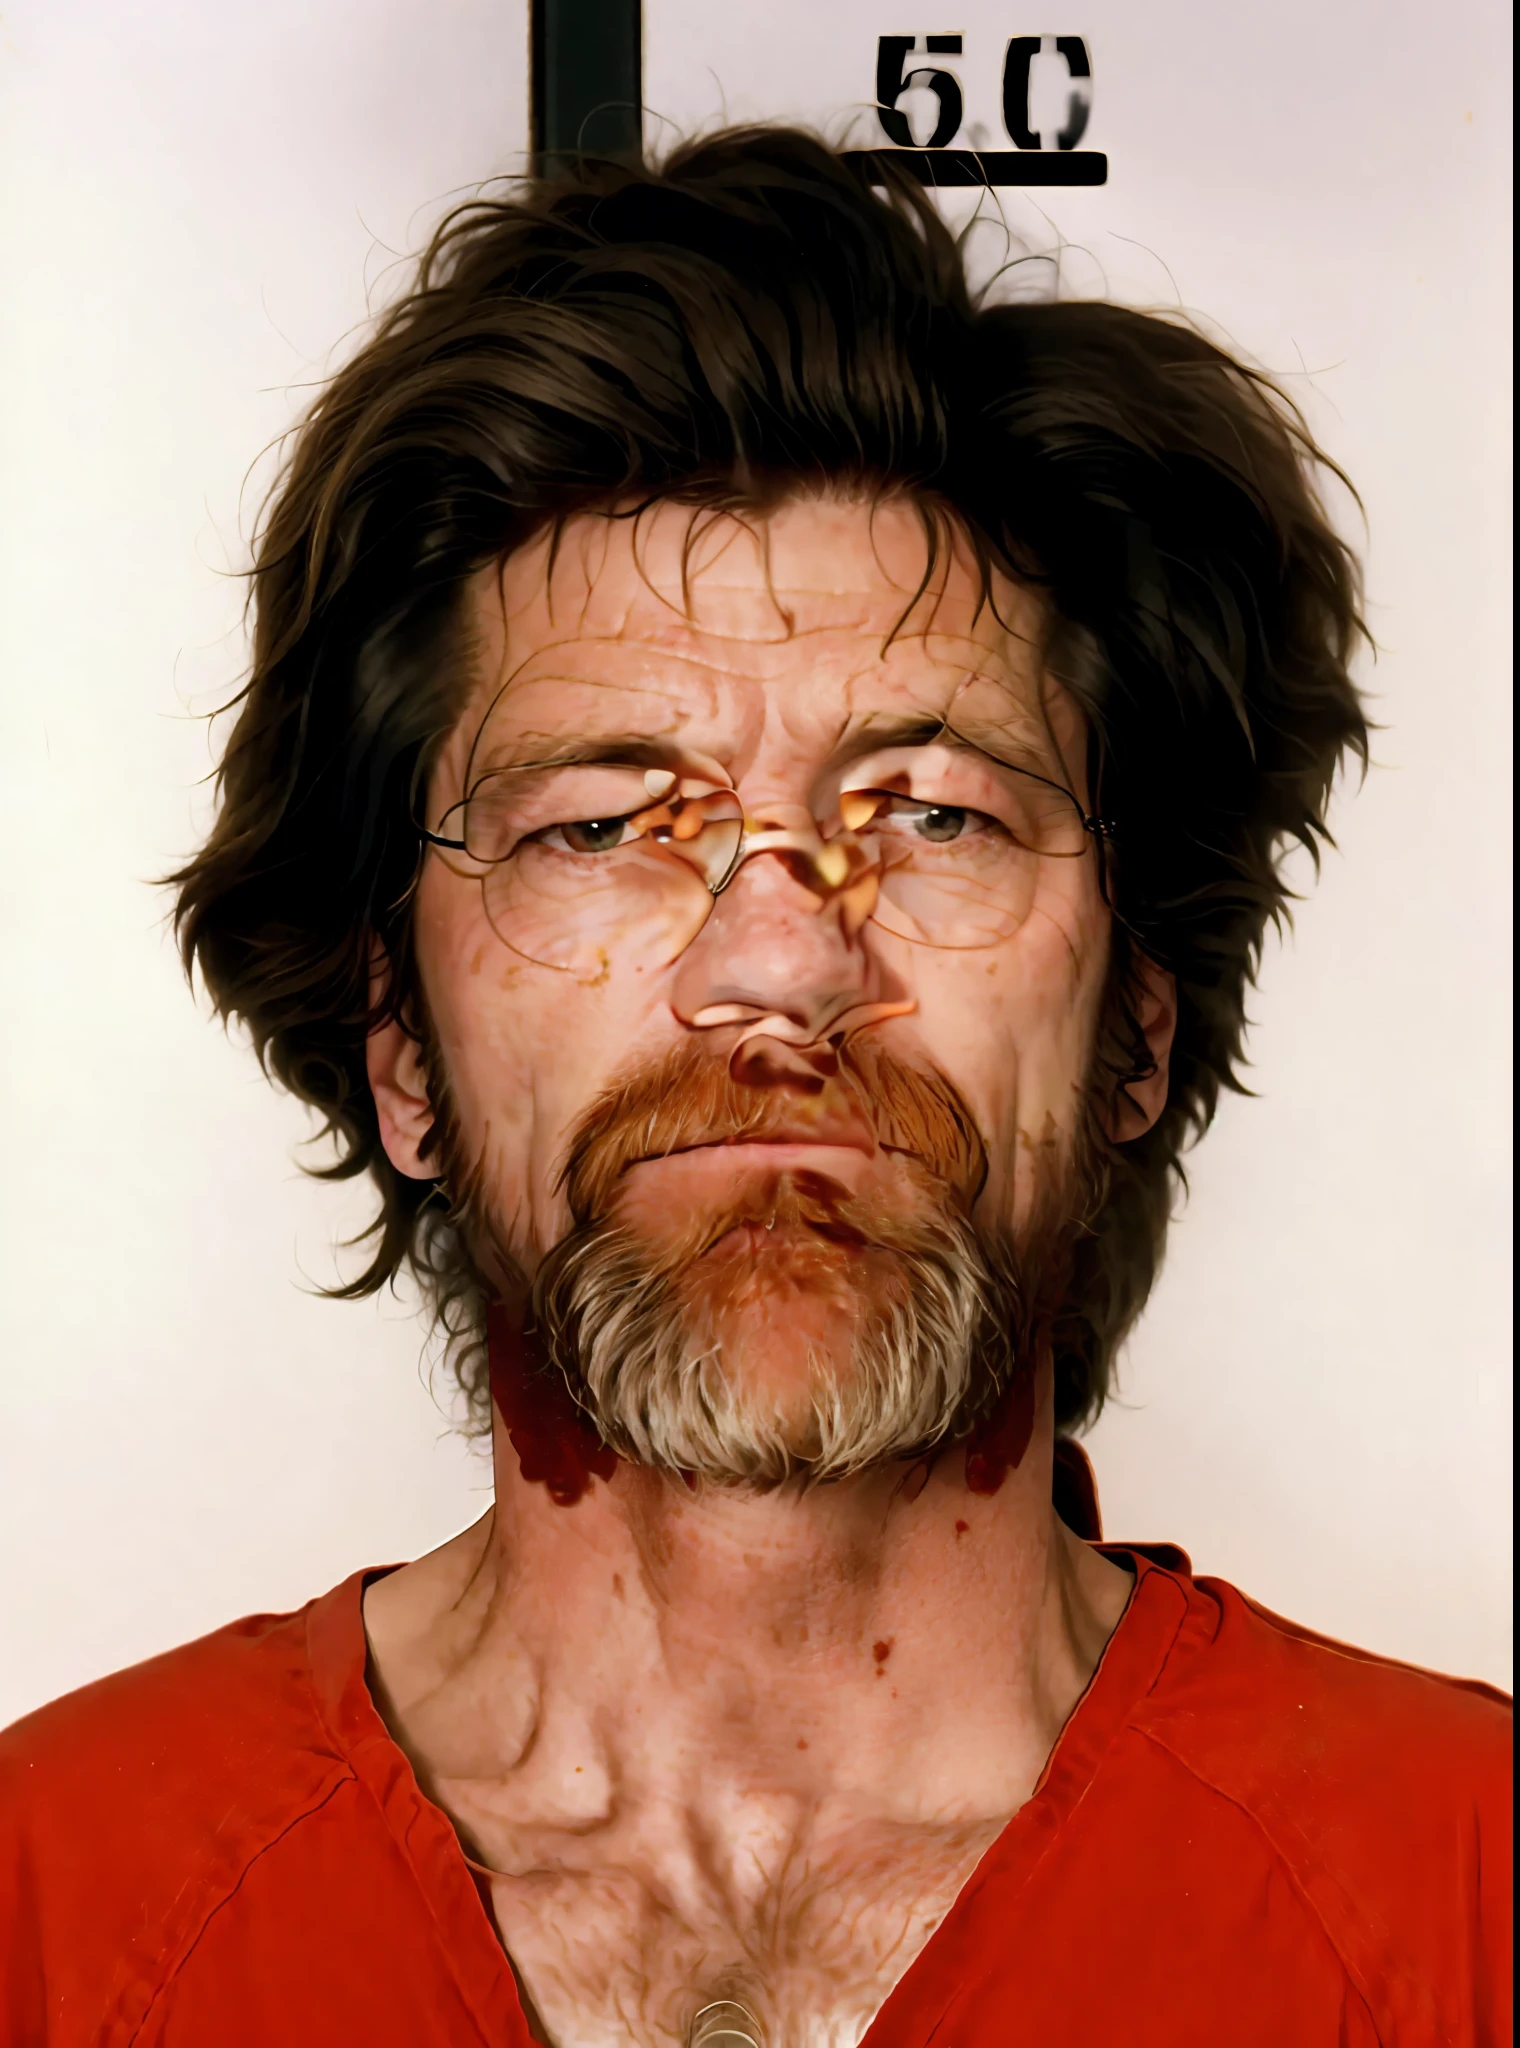 實際的, 杯子照片中留著鬍子、穿紅襯衫的男人, 一名 50 歲白人男子的照片, 一個毛茸茸的男人的照片, 西奧多·約翰·卡欽斯基, 活着最可怕的男人, 拍攝於1990年代初, 弗拉基米尔·克里斯茨基, 威廉·達福, 一個醜男人的顆粒狀照片, 聯合轟炸機